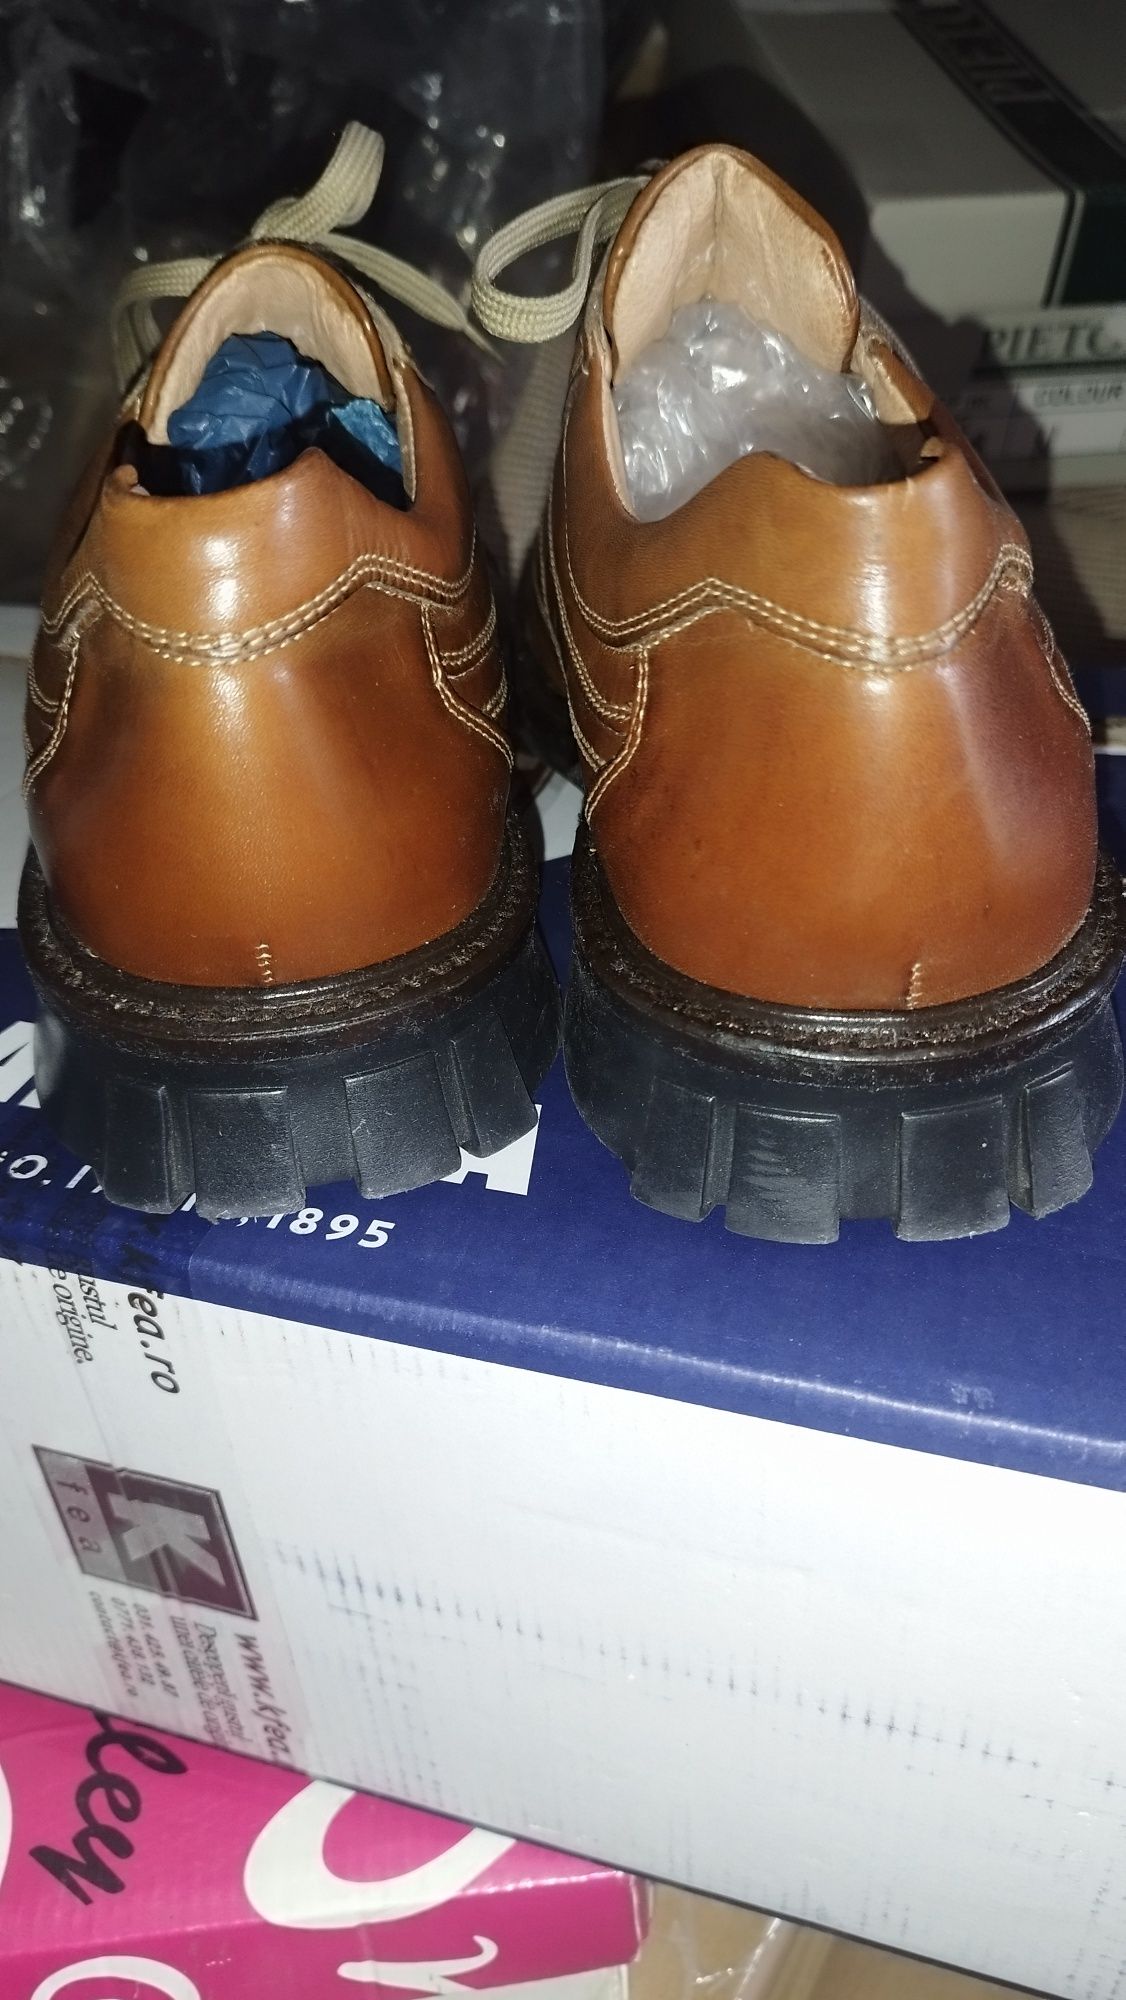 De vânzare pantofi noi bărbații măr.42.piele naturală .